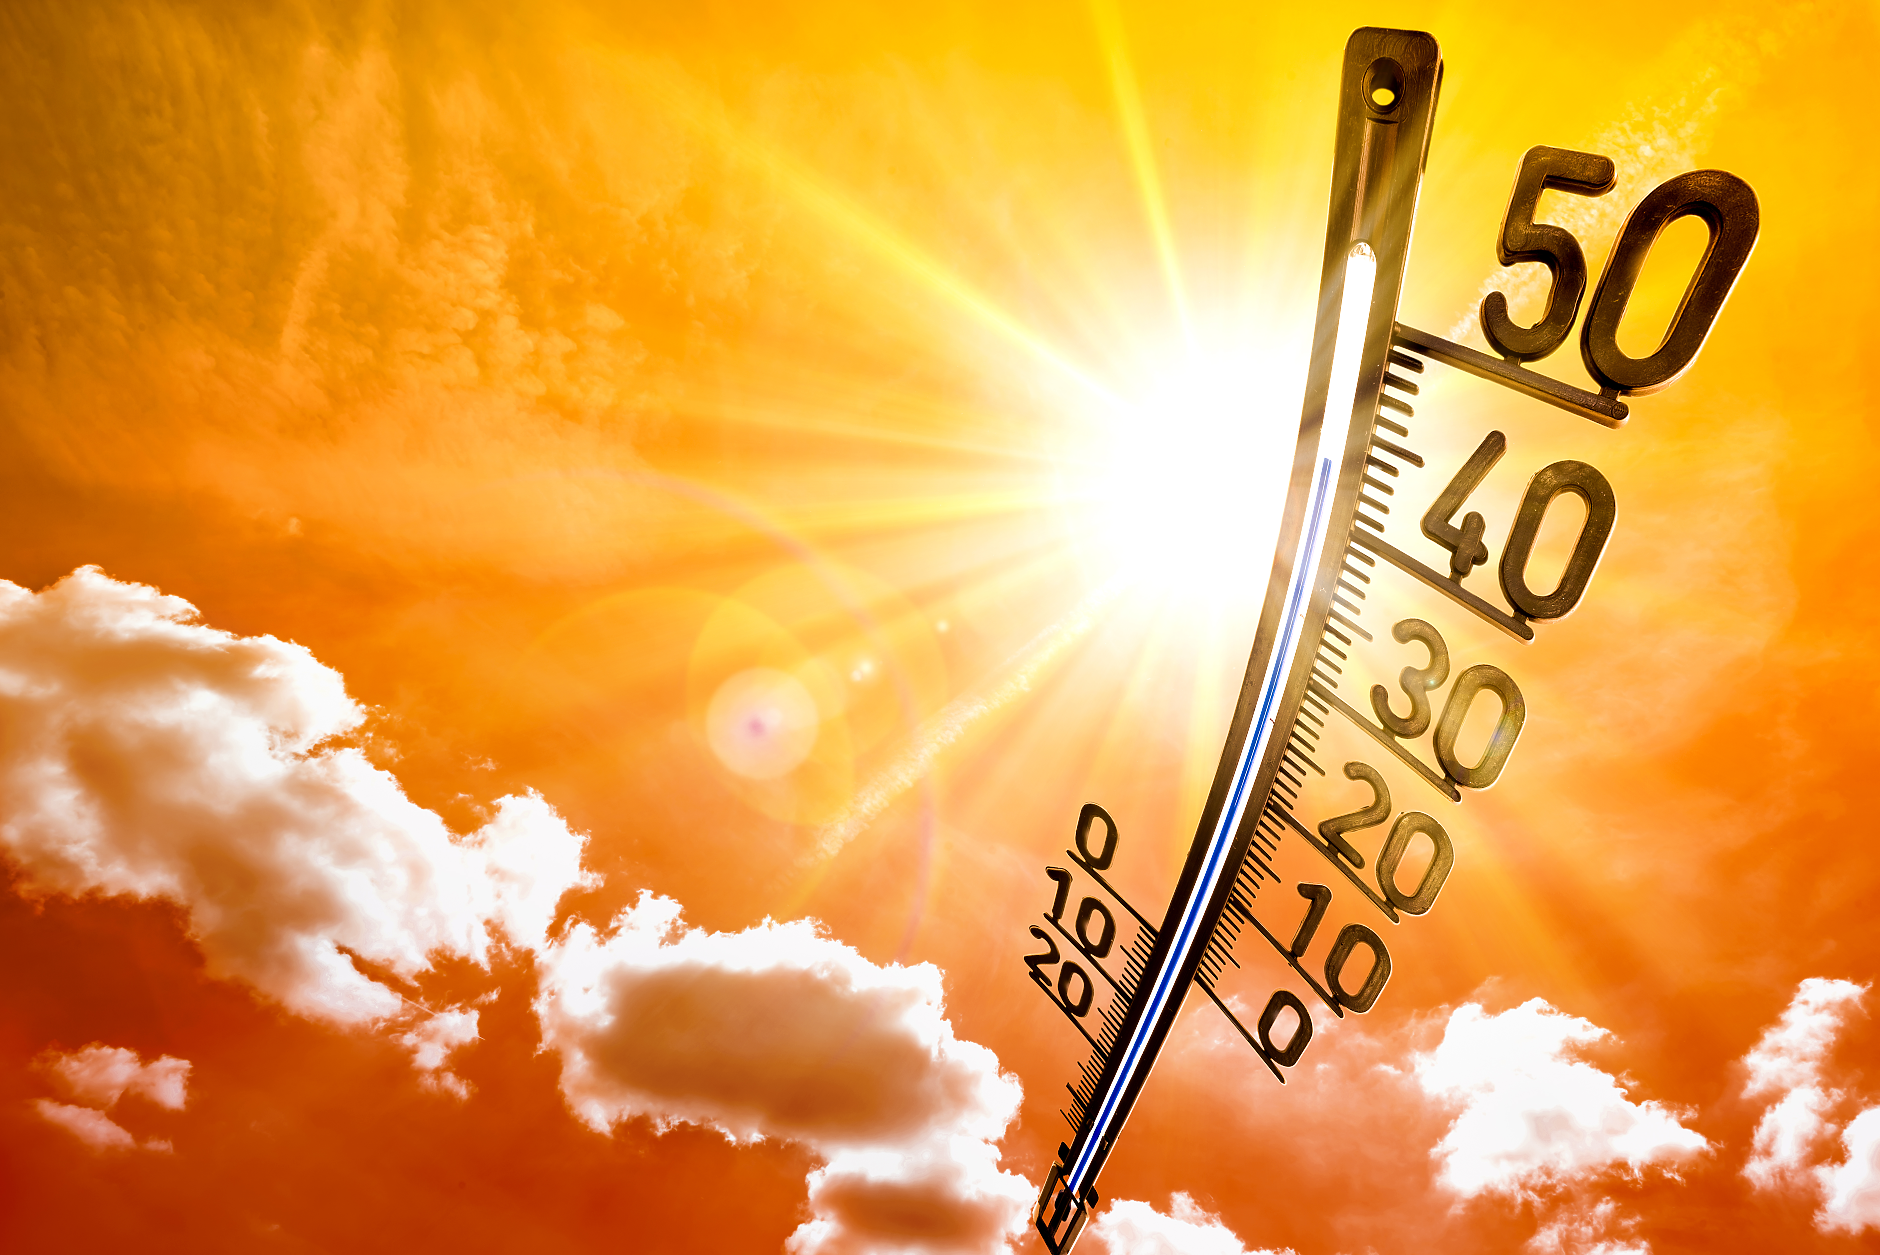 Времето: Слънчево и горещо. Новата седмица идва с нова порция африканска жега